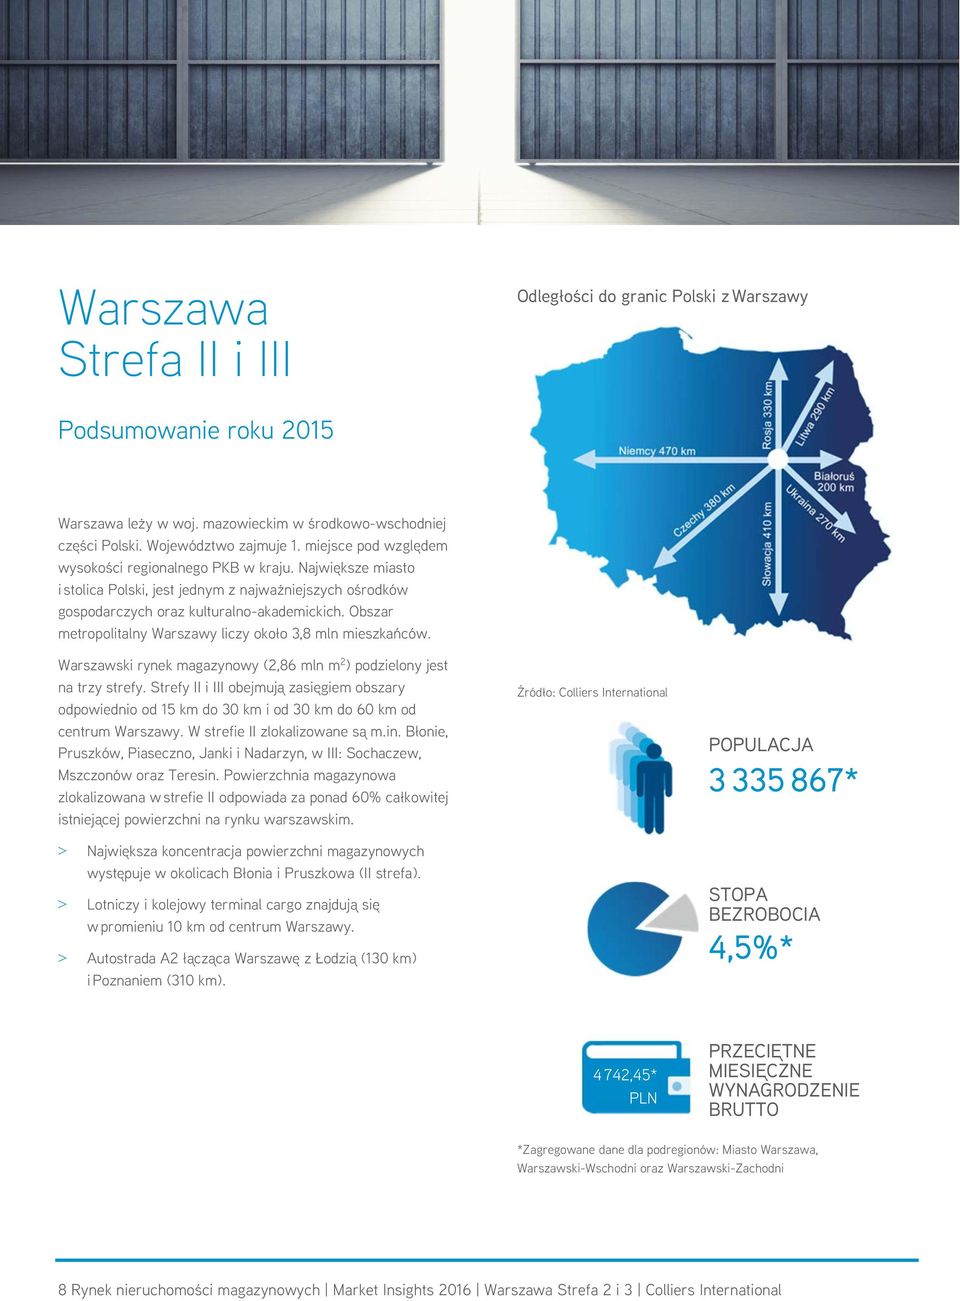 Obszar metropolitalny Warszawy liczy około 3,8 mln mieszkańców. Warszawski rynek magazynowy (2,86 mln m 2 ) podzielony jest na trzy strefy.